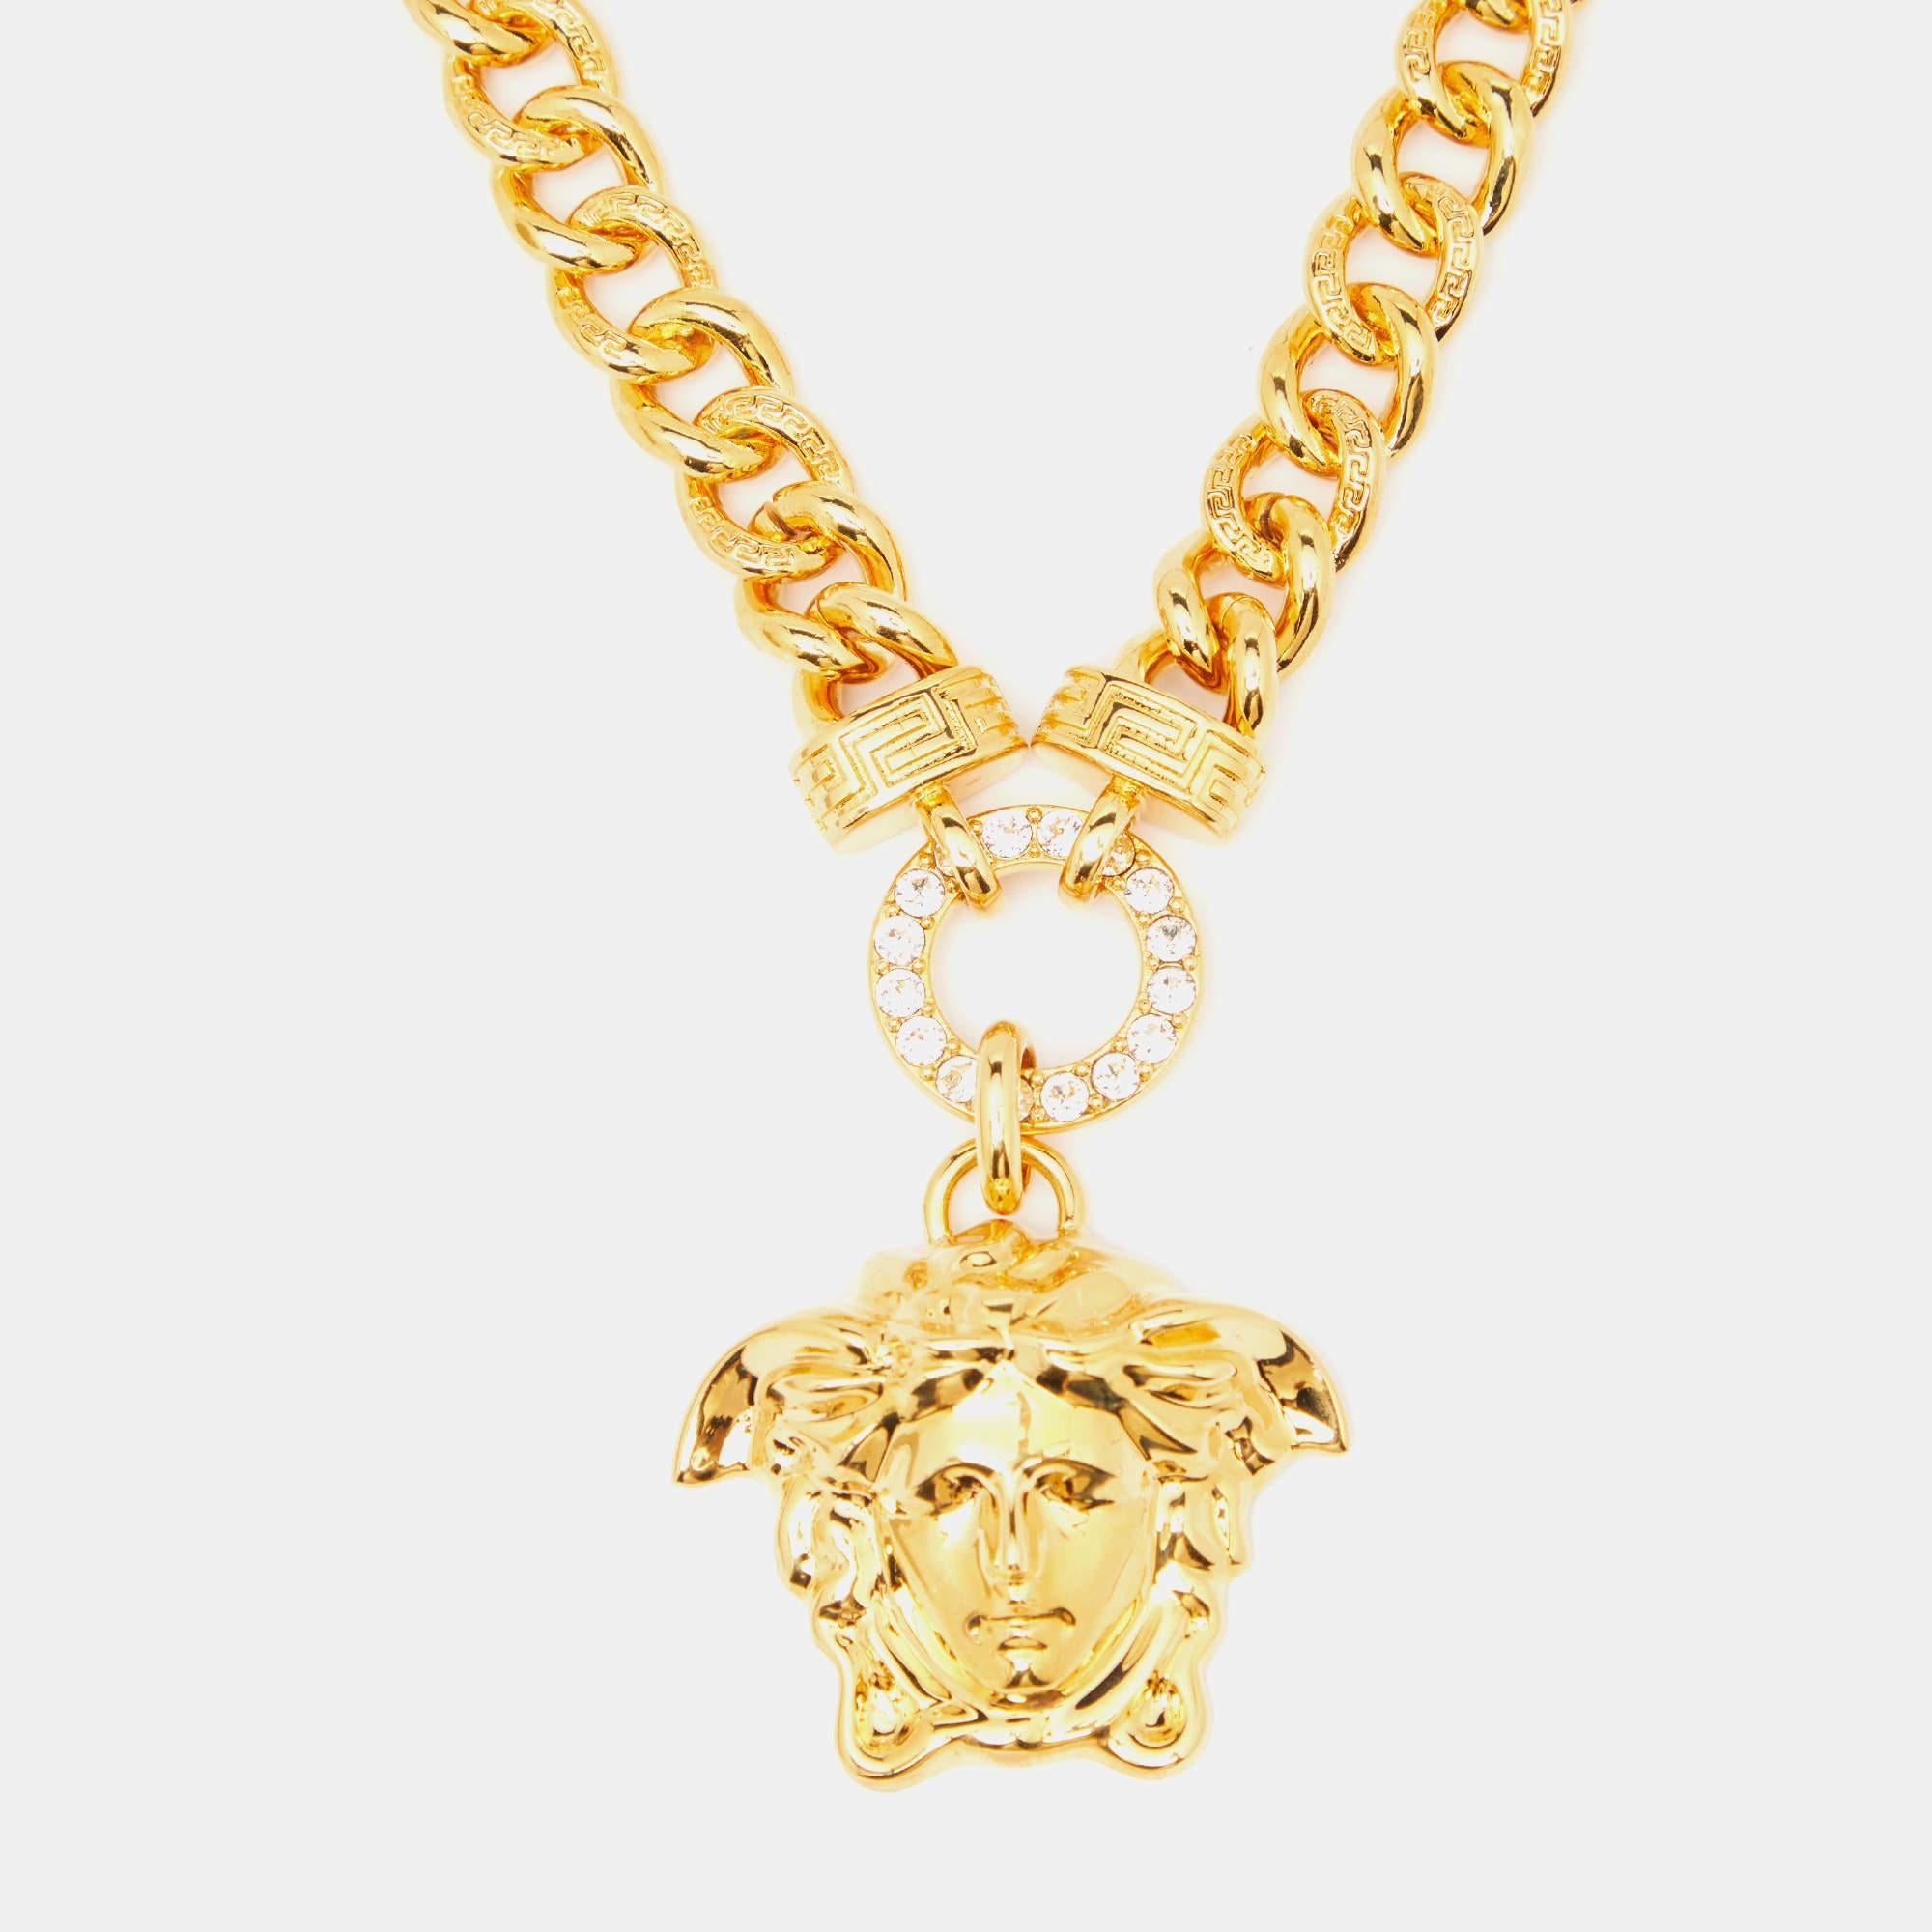 Paré de l'allure opulente du collier Versace. Réalisée avec une attention méticuleuse aux détails, cette pièce exquise présente un emblème Medusa incrusté de cristaux étincelants, sur un fond doré lustré. Une déclaration intemporelle de luxe et de